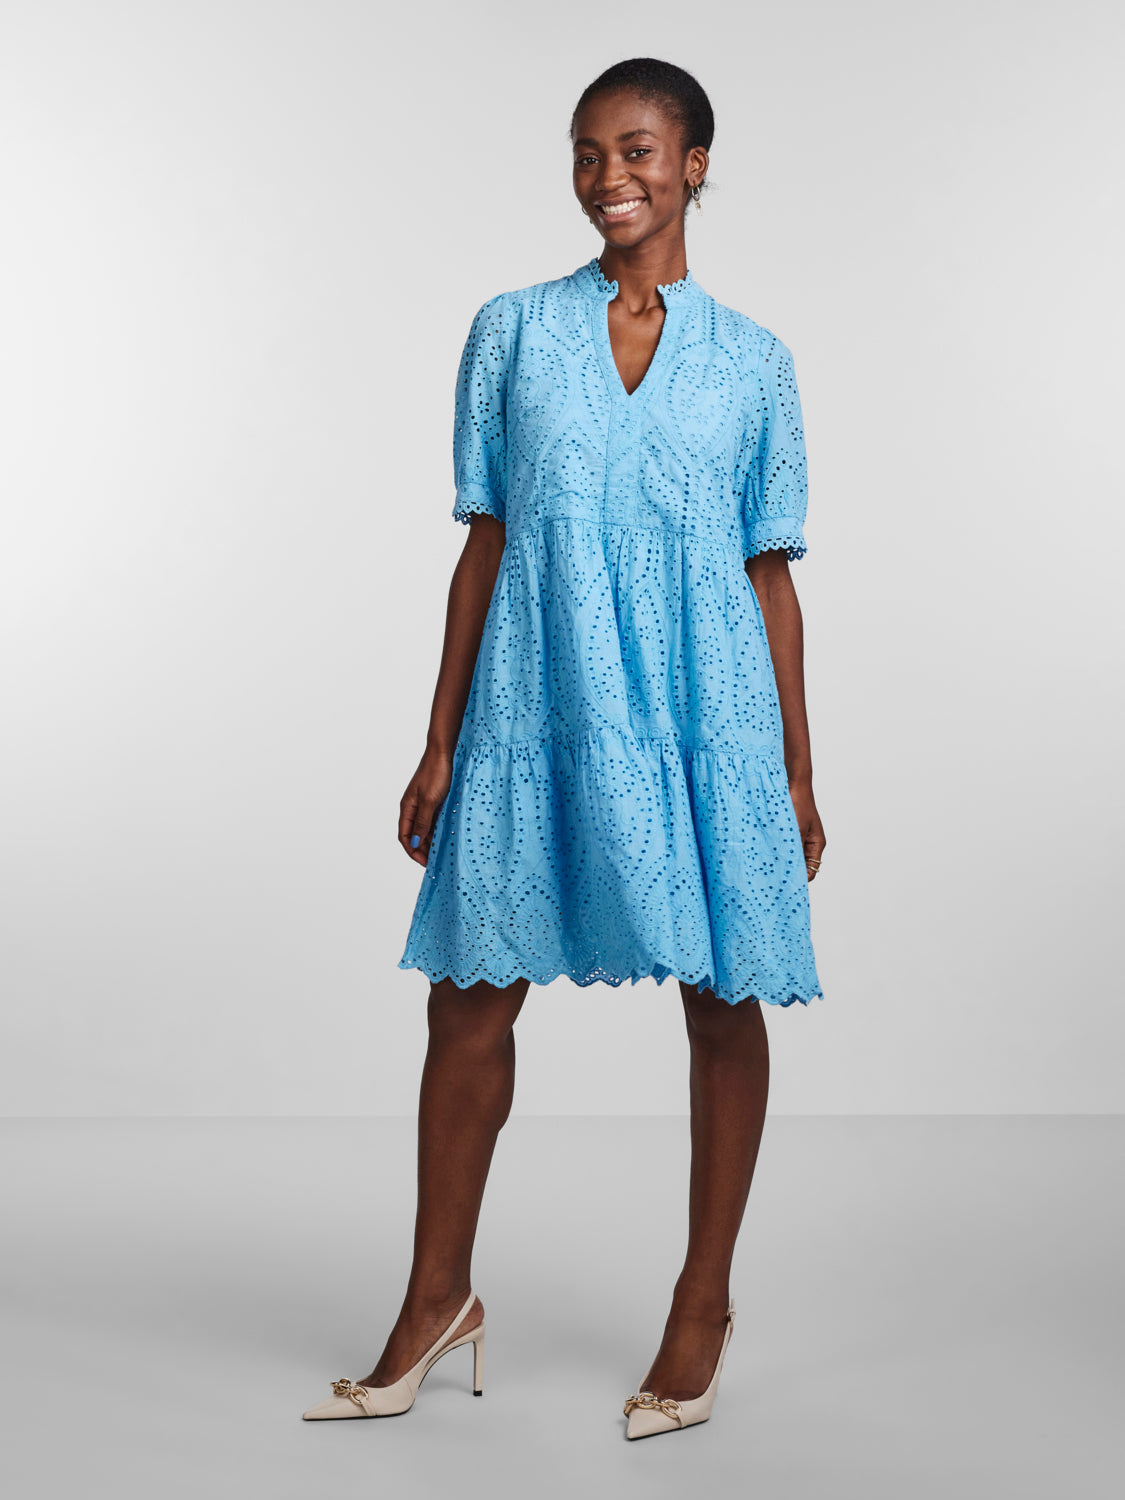 YASHOLI Dress - Ethereal Blue